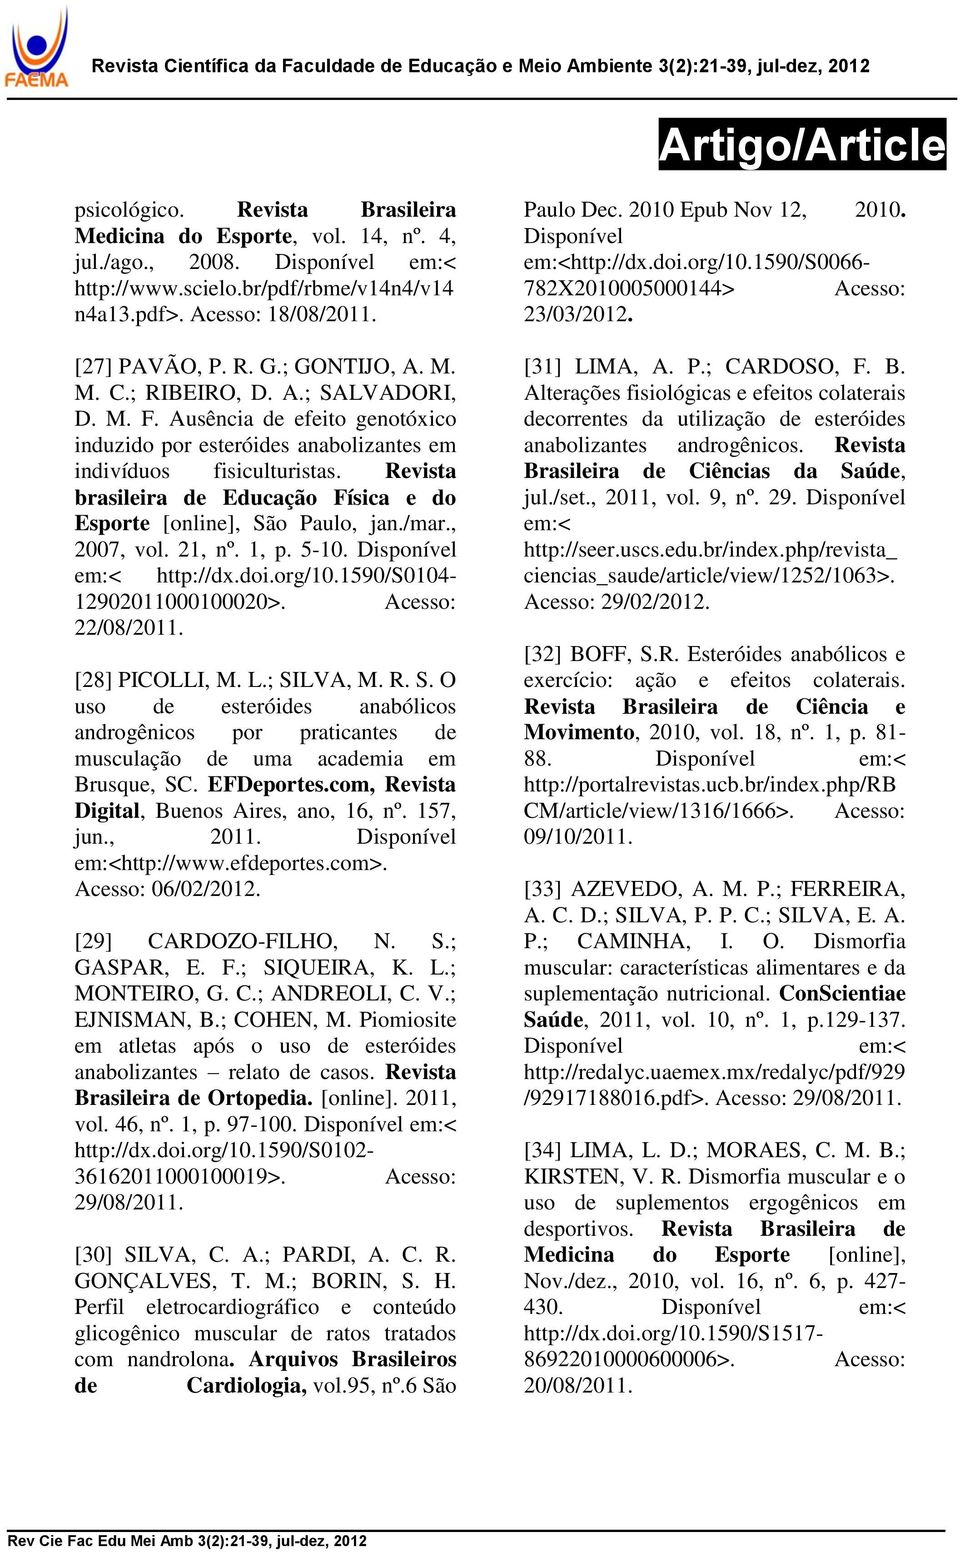 Revista brasileira de Educação Física e do Esporte [online], São Paulo, jan./mar., 2007, vol. 21, nº. 1, p. 5-10. Disponível em:< http://dx.doi.org/10.1590/s0104-12902011000100020>.